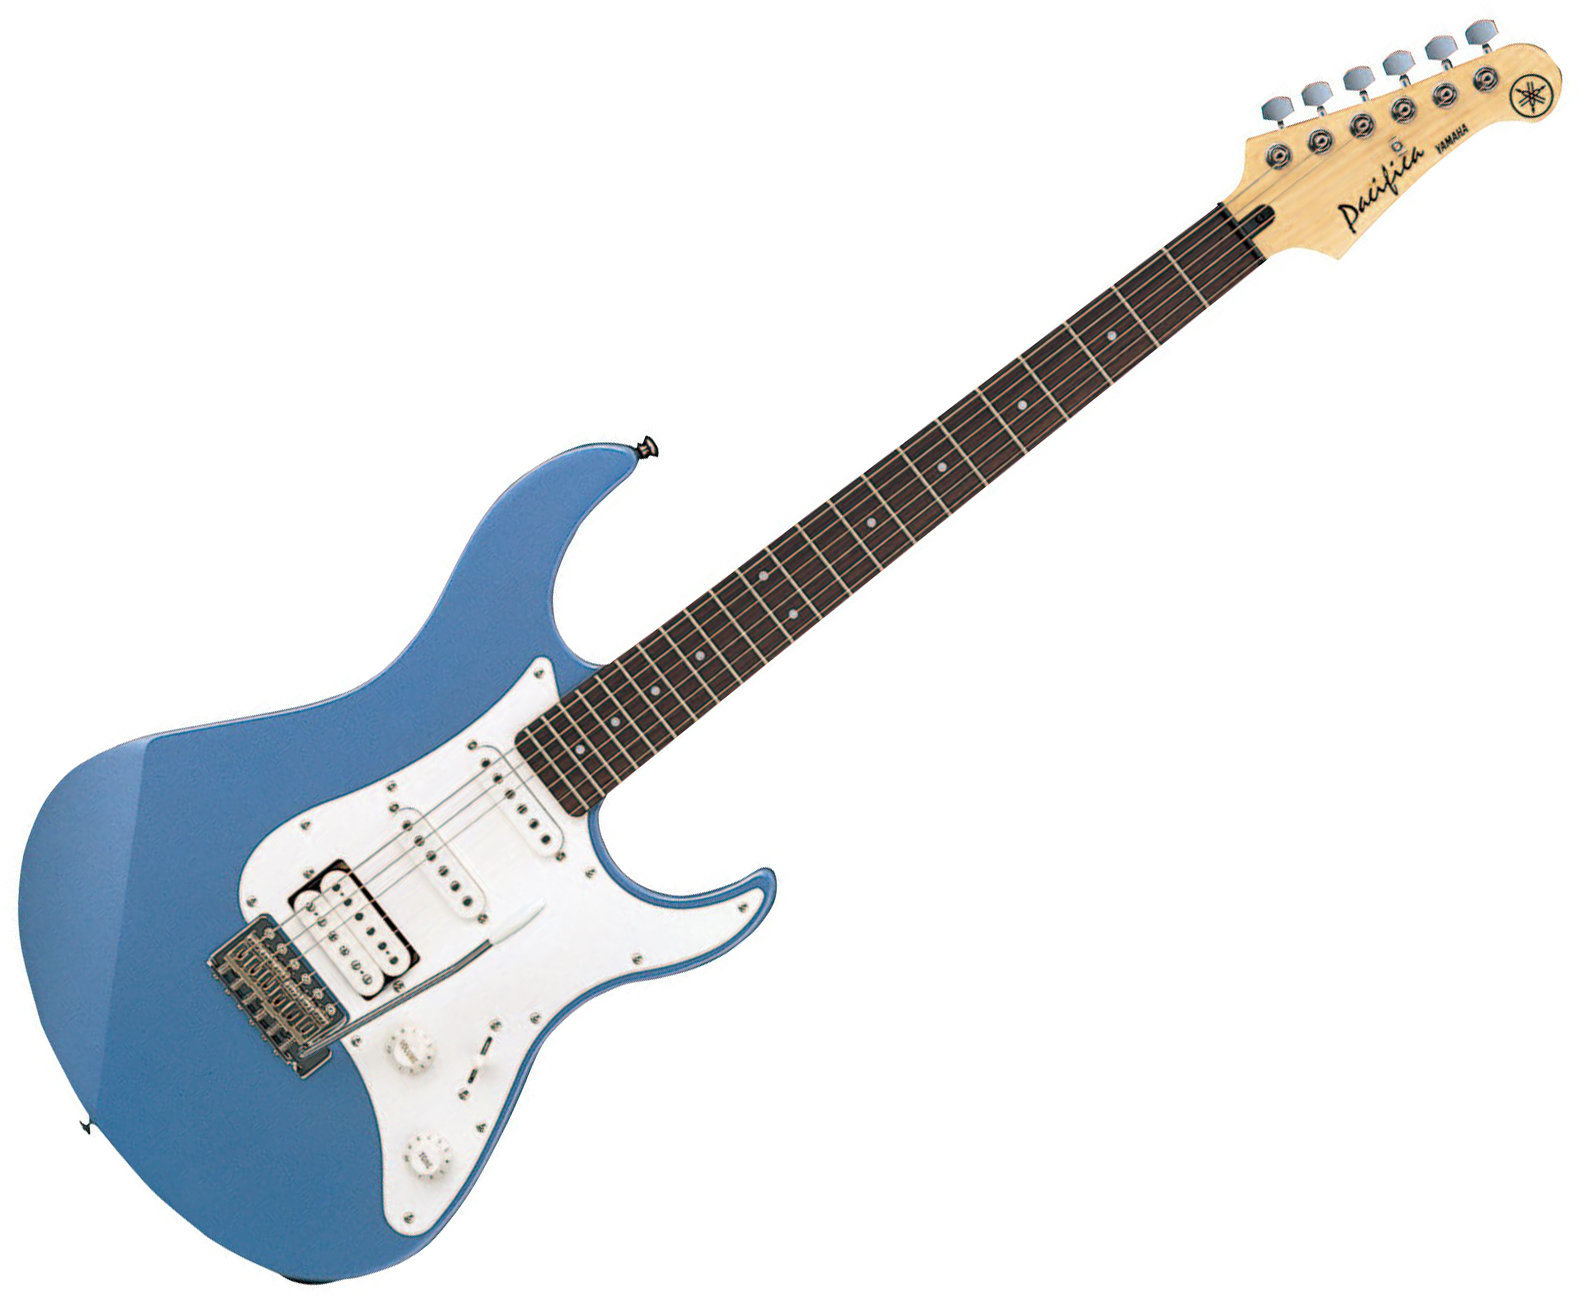 Elektrická kytara Yamaha Pacifica 112 J Lake Placid Blue